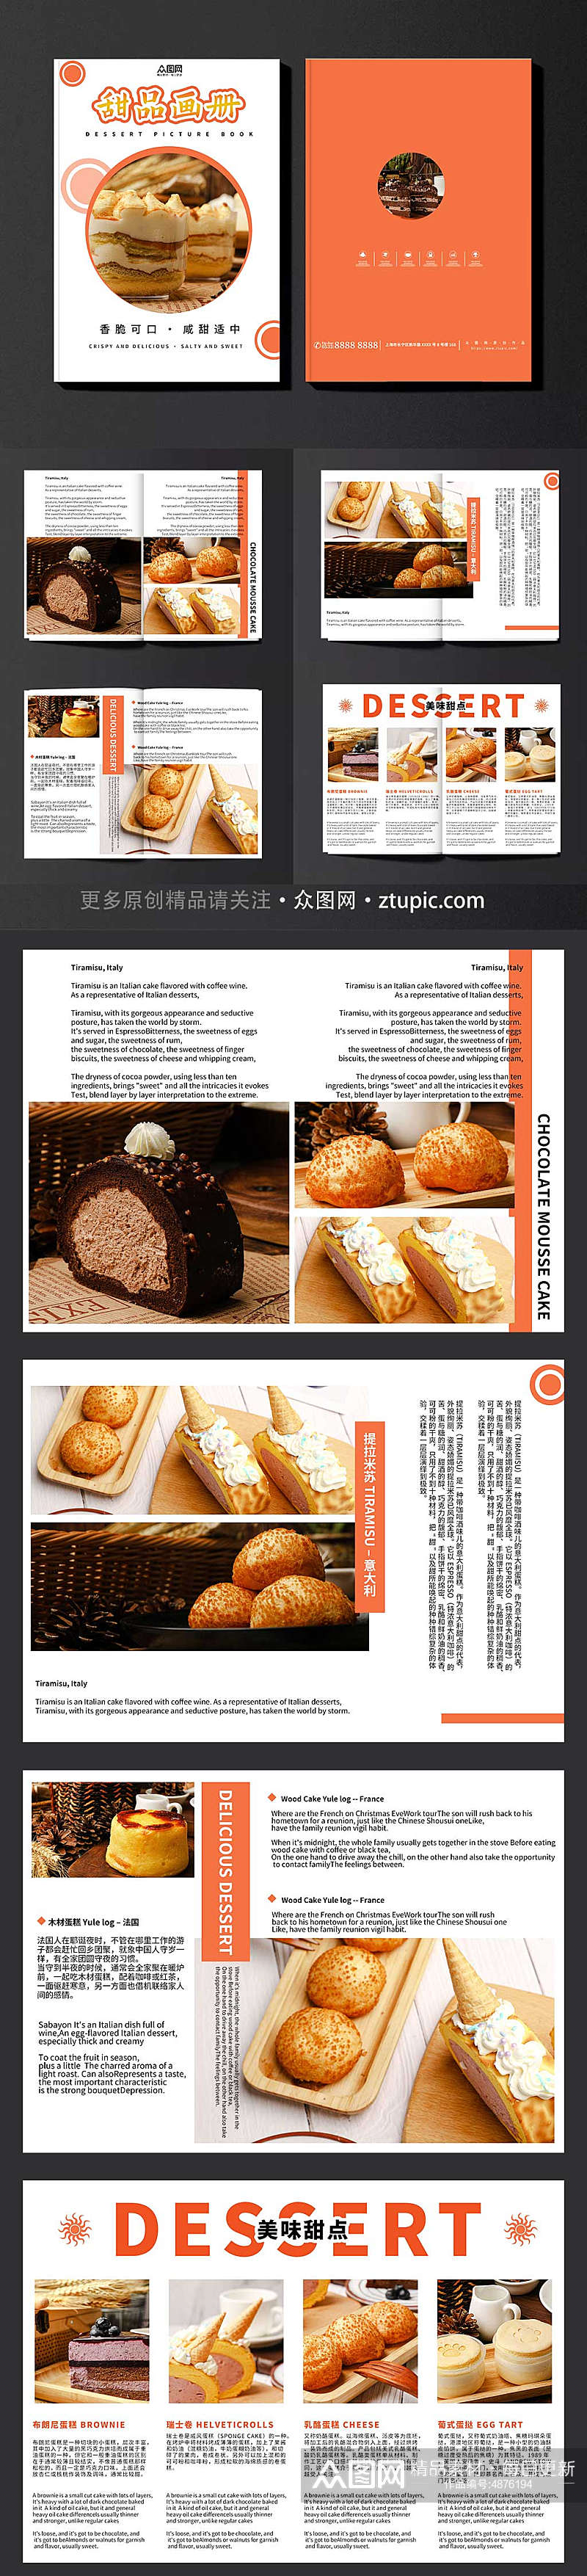 橙色甜点甜品蛋糕下午茶美食宣传册画册素材